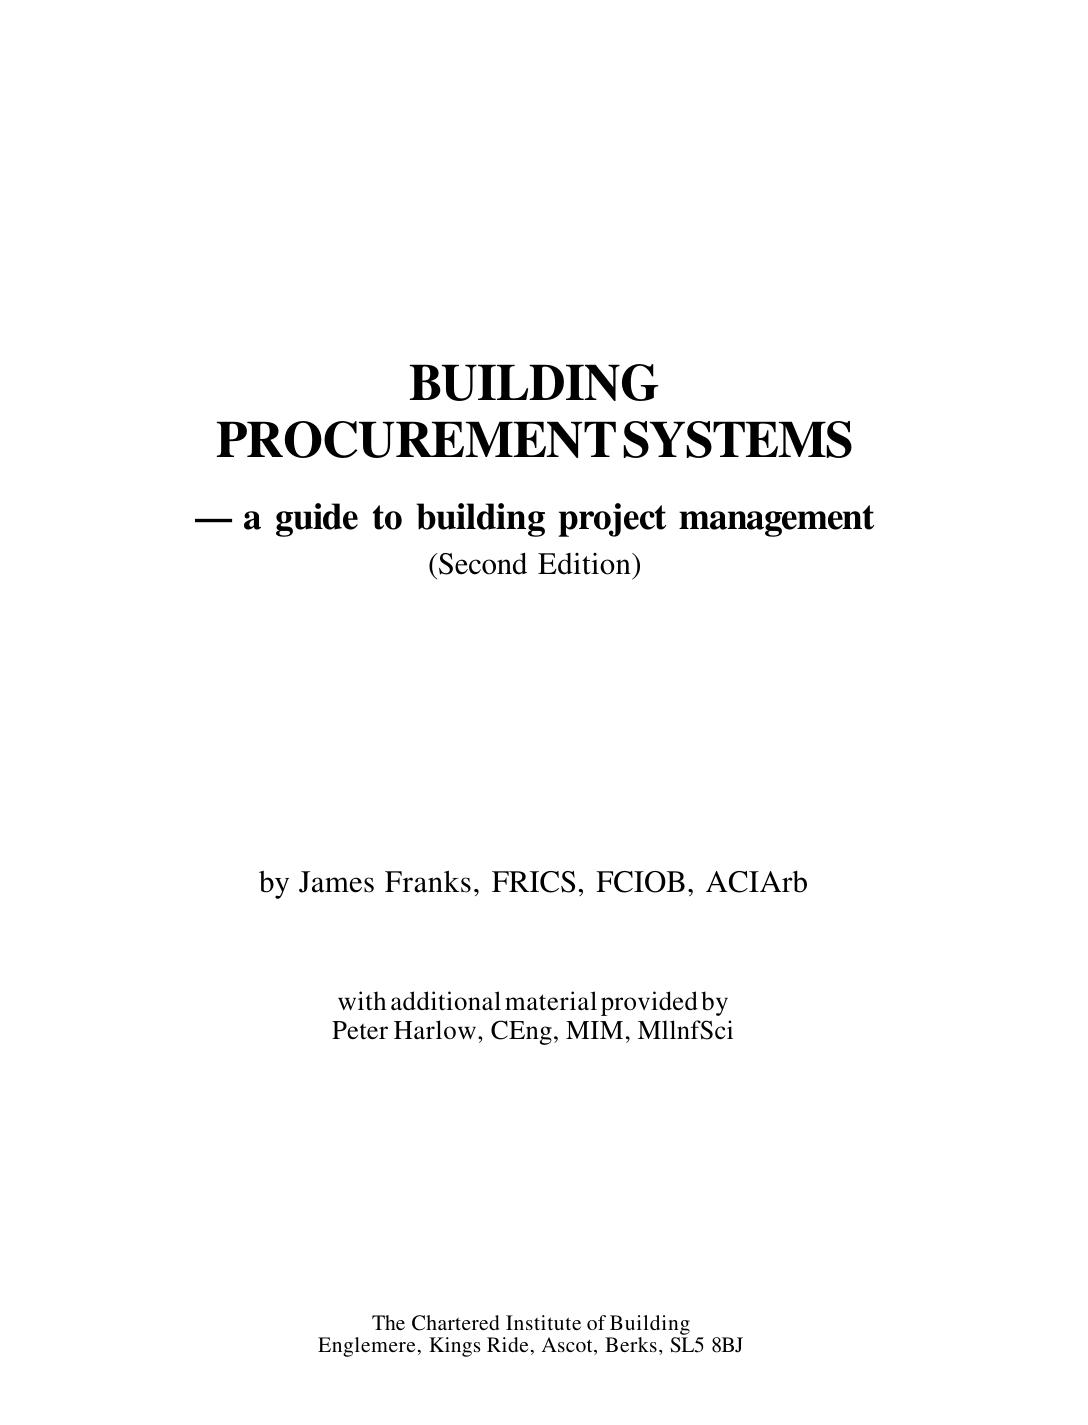 Building procurement systems 1990